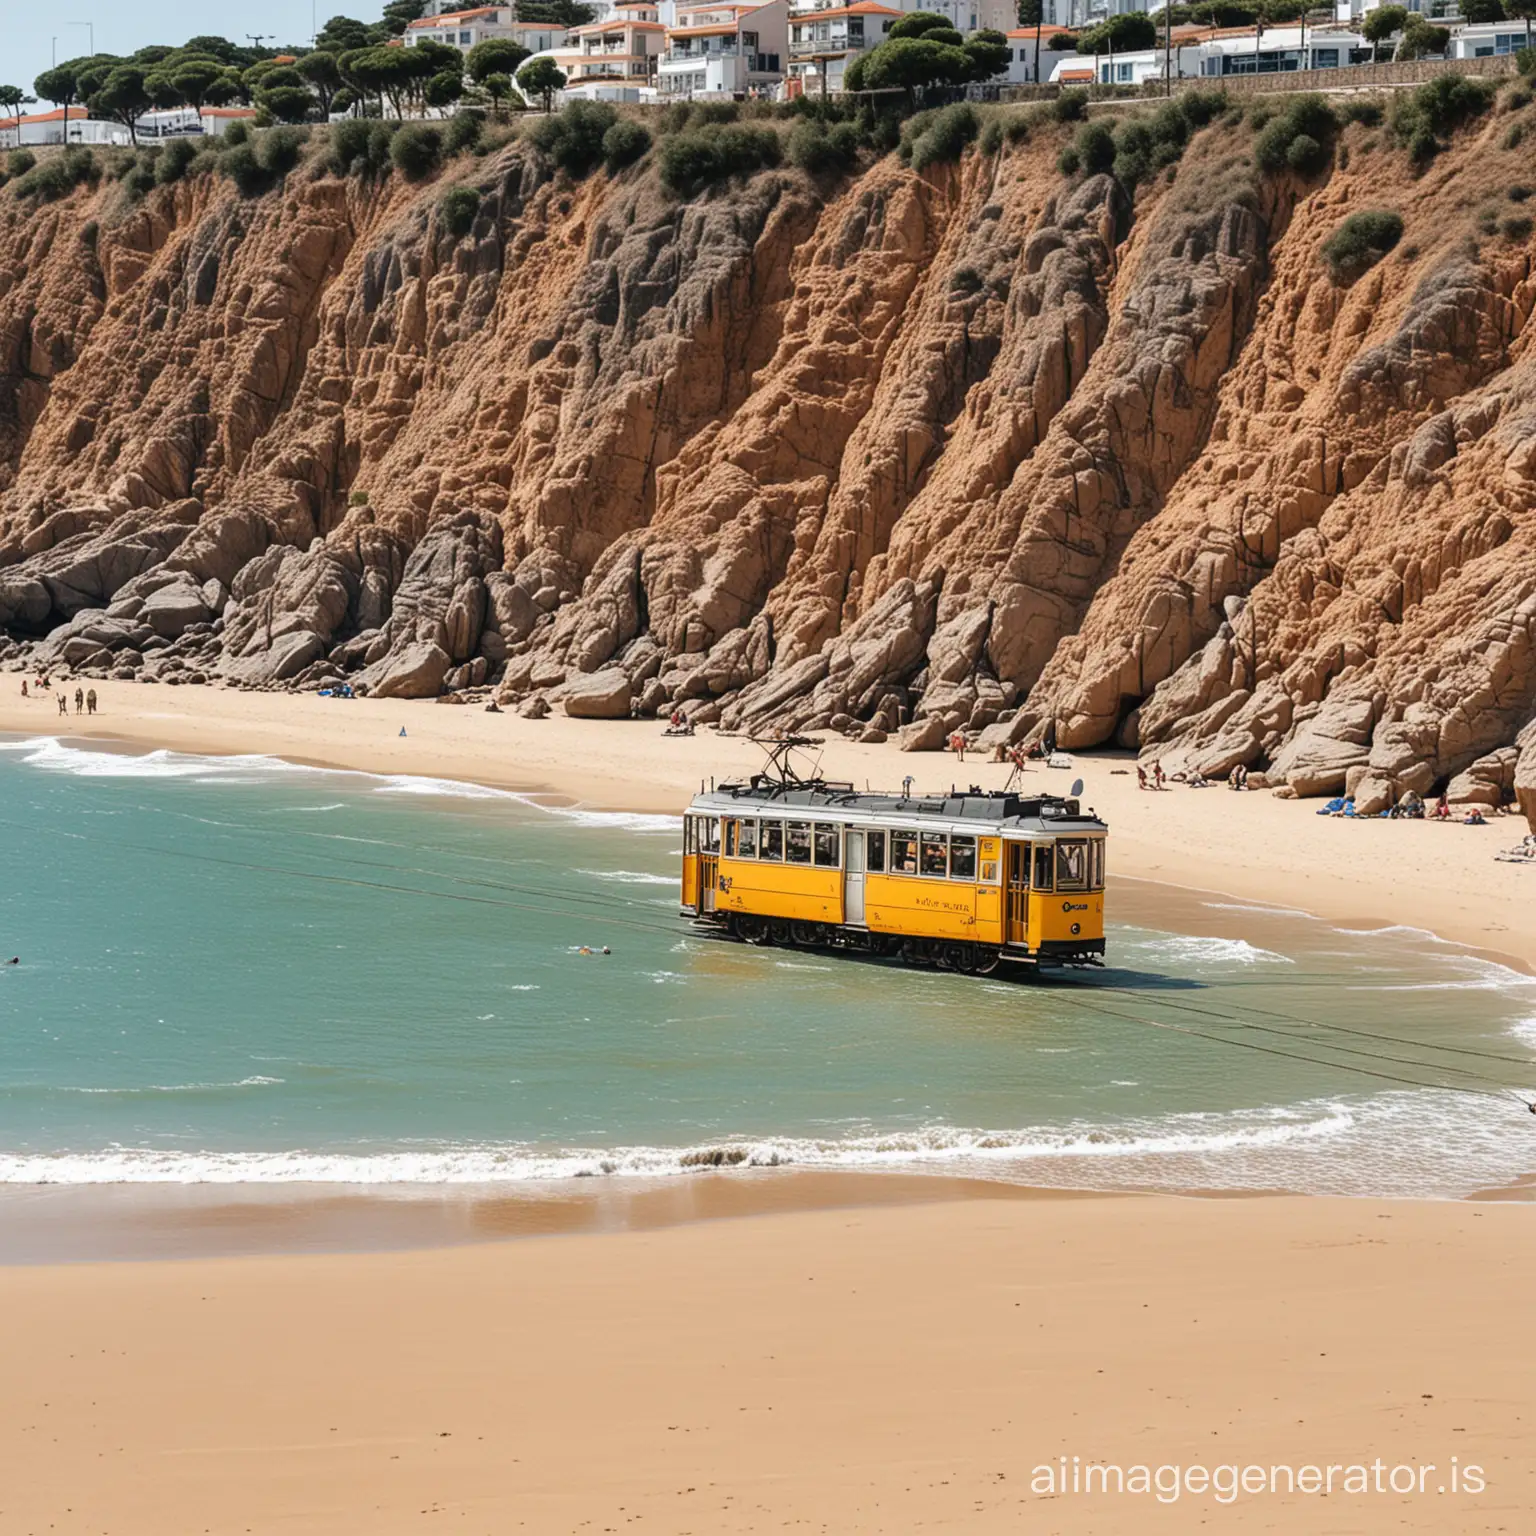 A Portuguese tram on a Portuguese beach